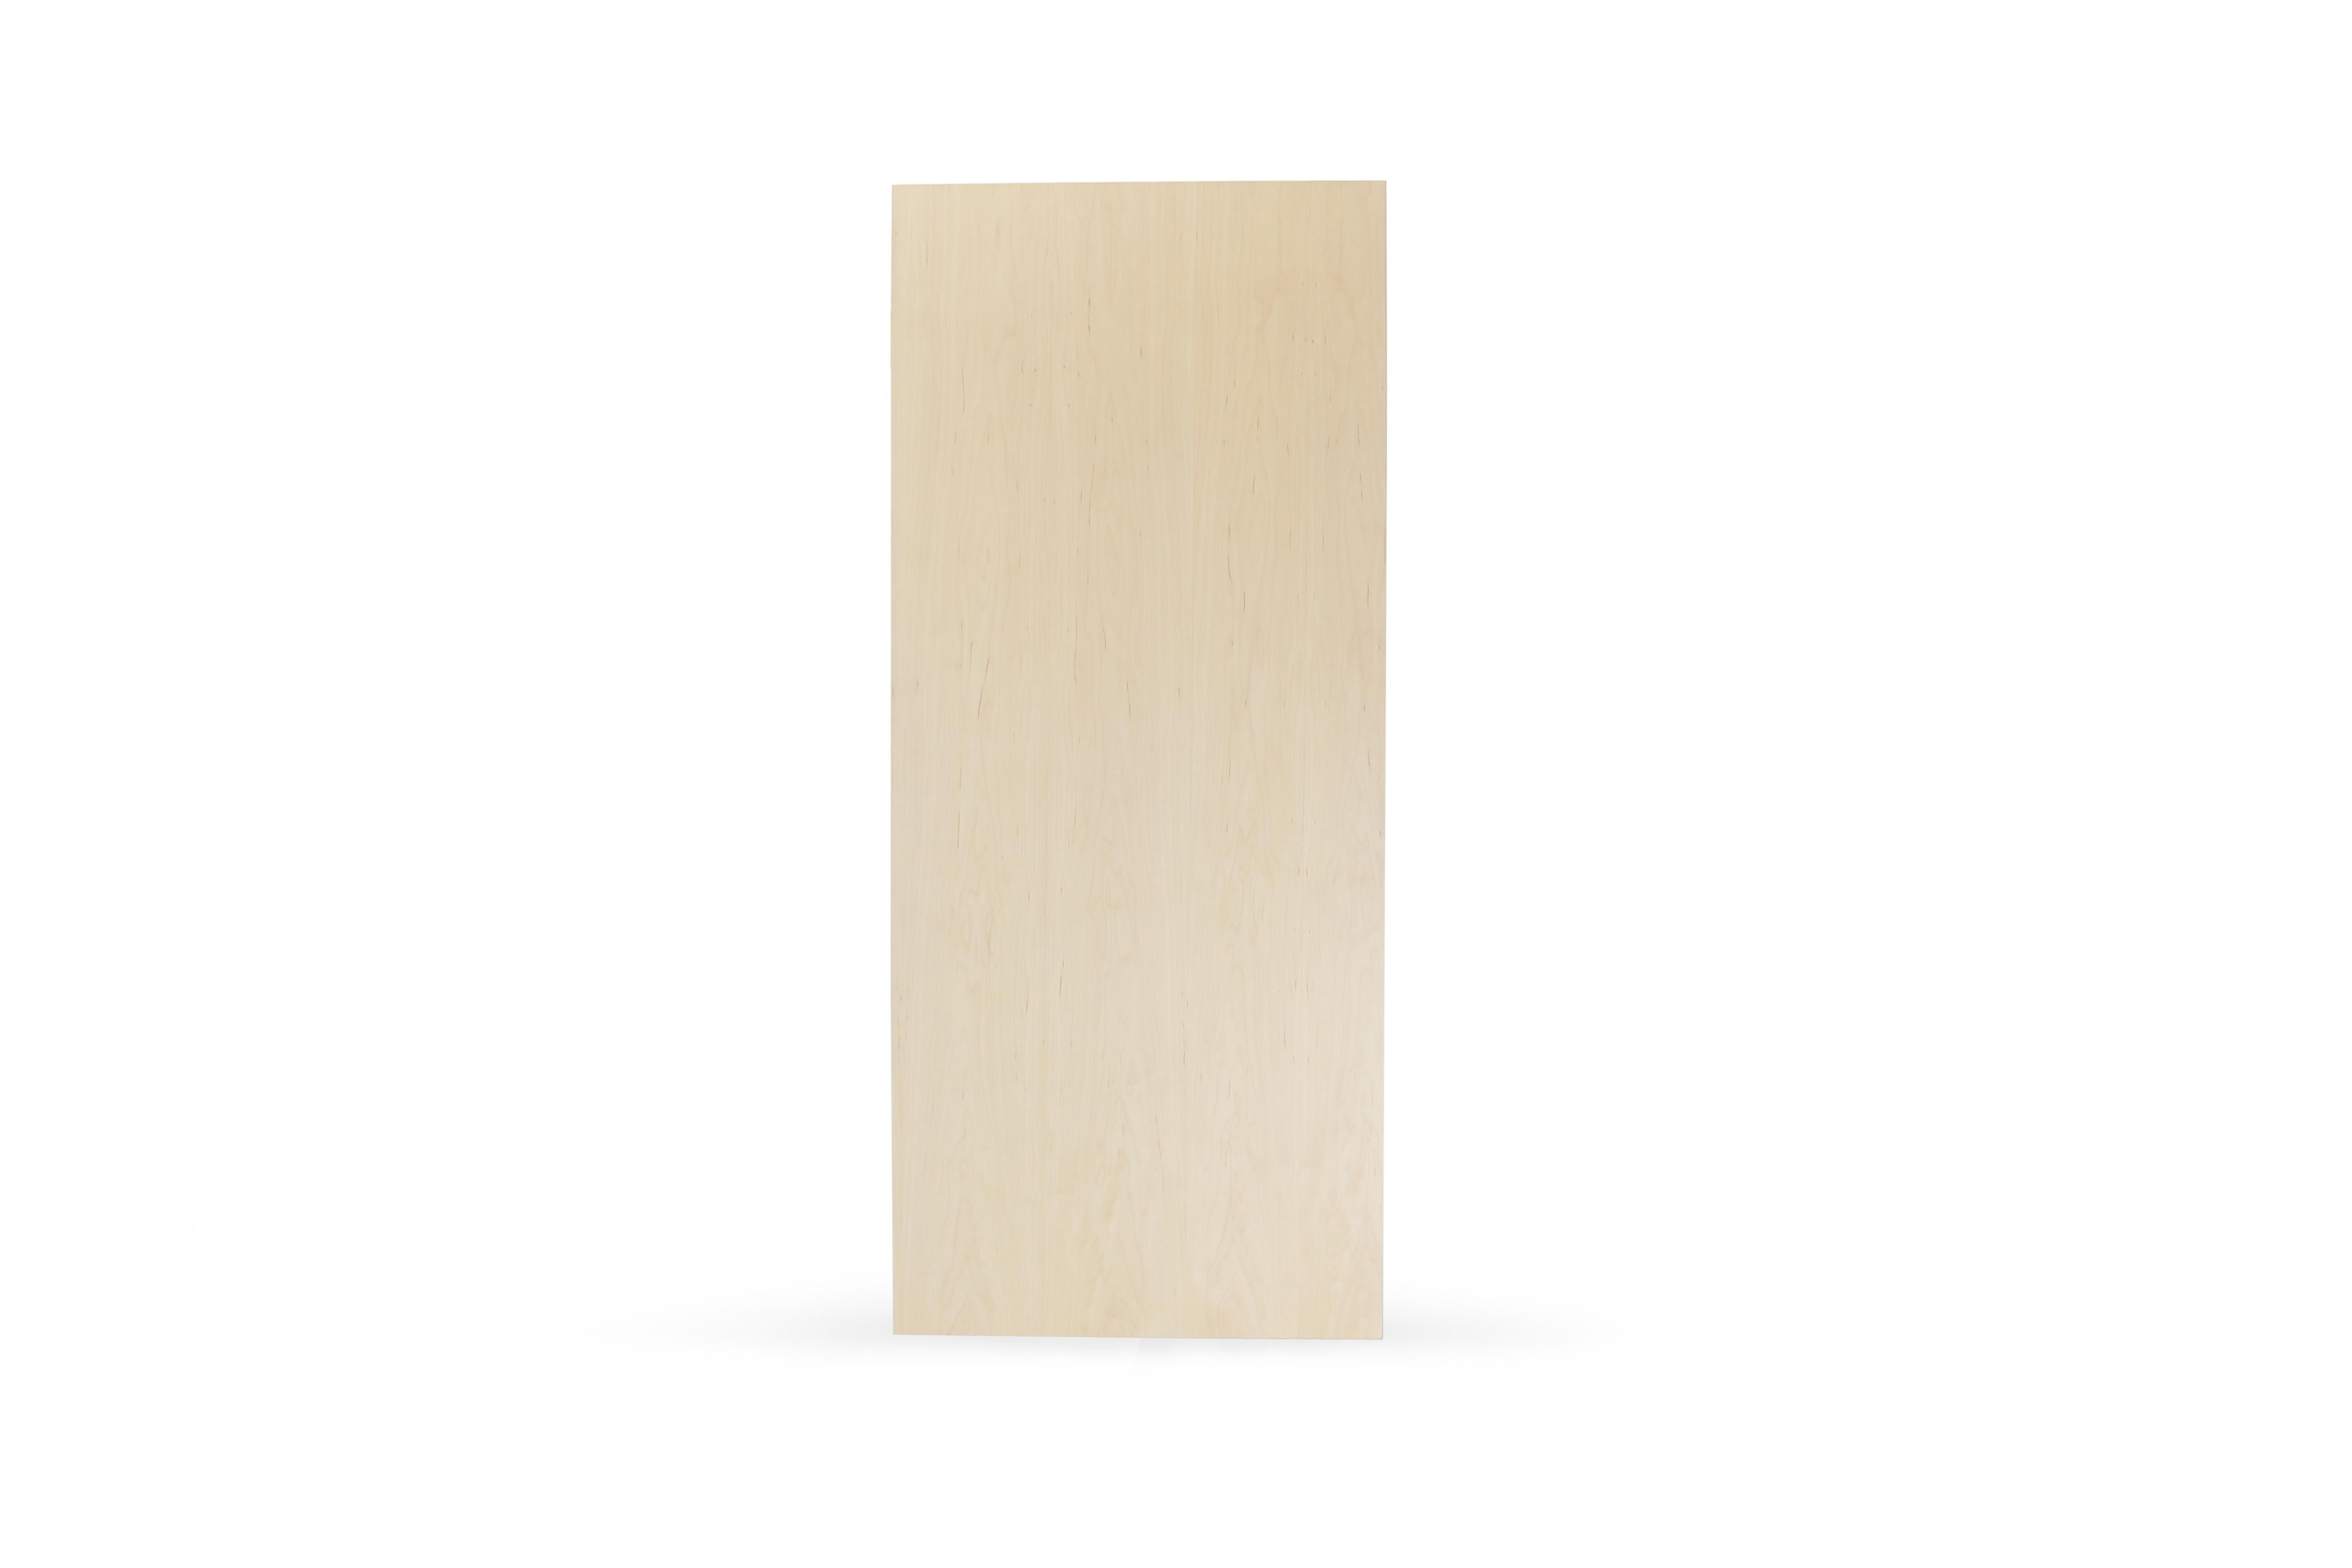 Ein schlanker, eleganter und leichter Schreibtisch, der in jeder gewünschten Farbe gestaltet werden kann. Dieses handgefertigte Möbelstück ist eine perfekte Kombination aus industriellen Haarnadelbeinen und einer abgeschrägten Holzplatte. Die